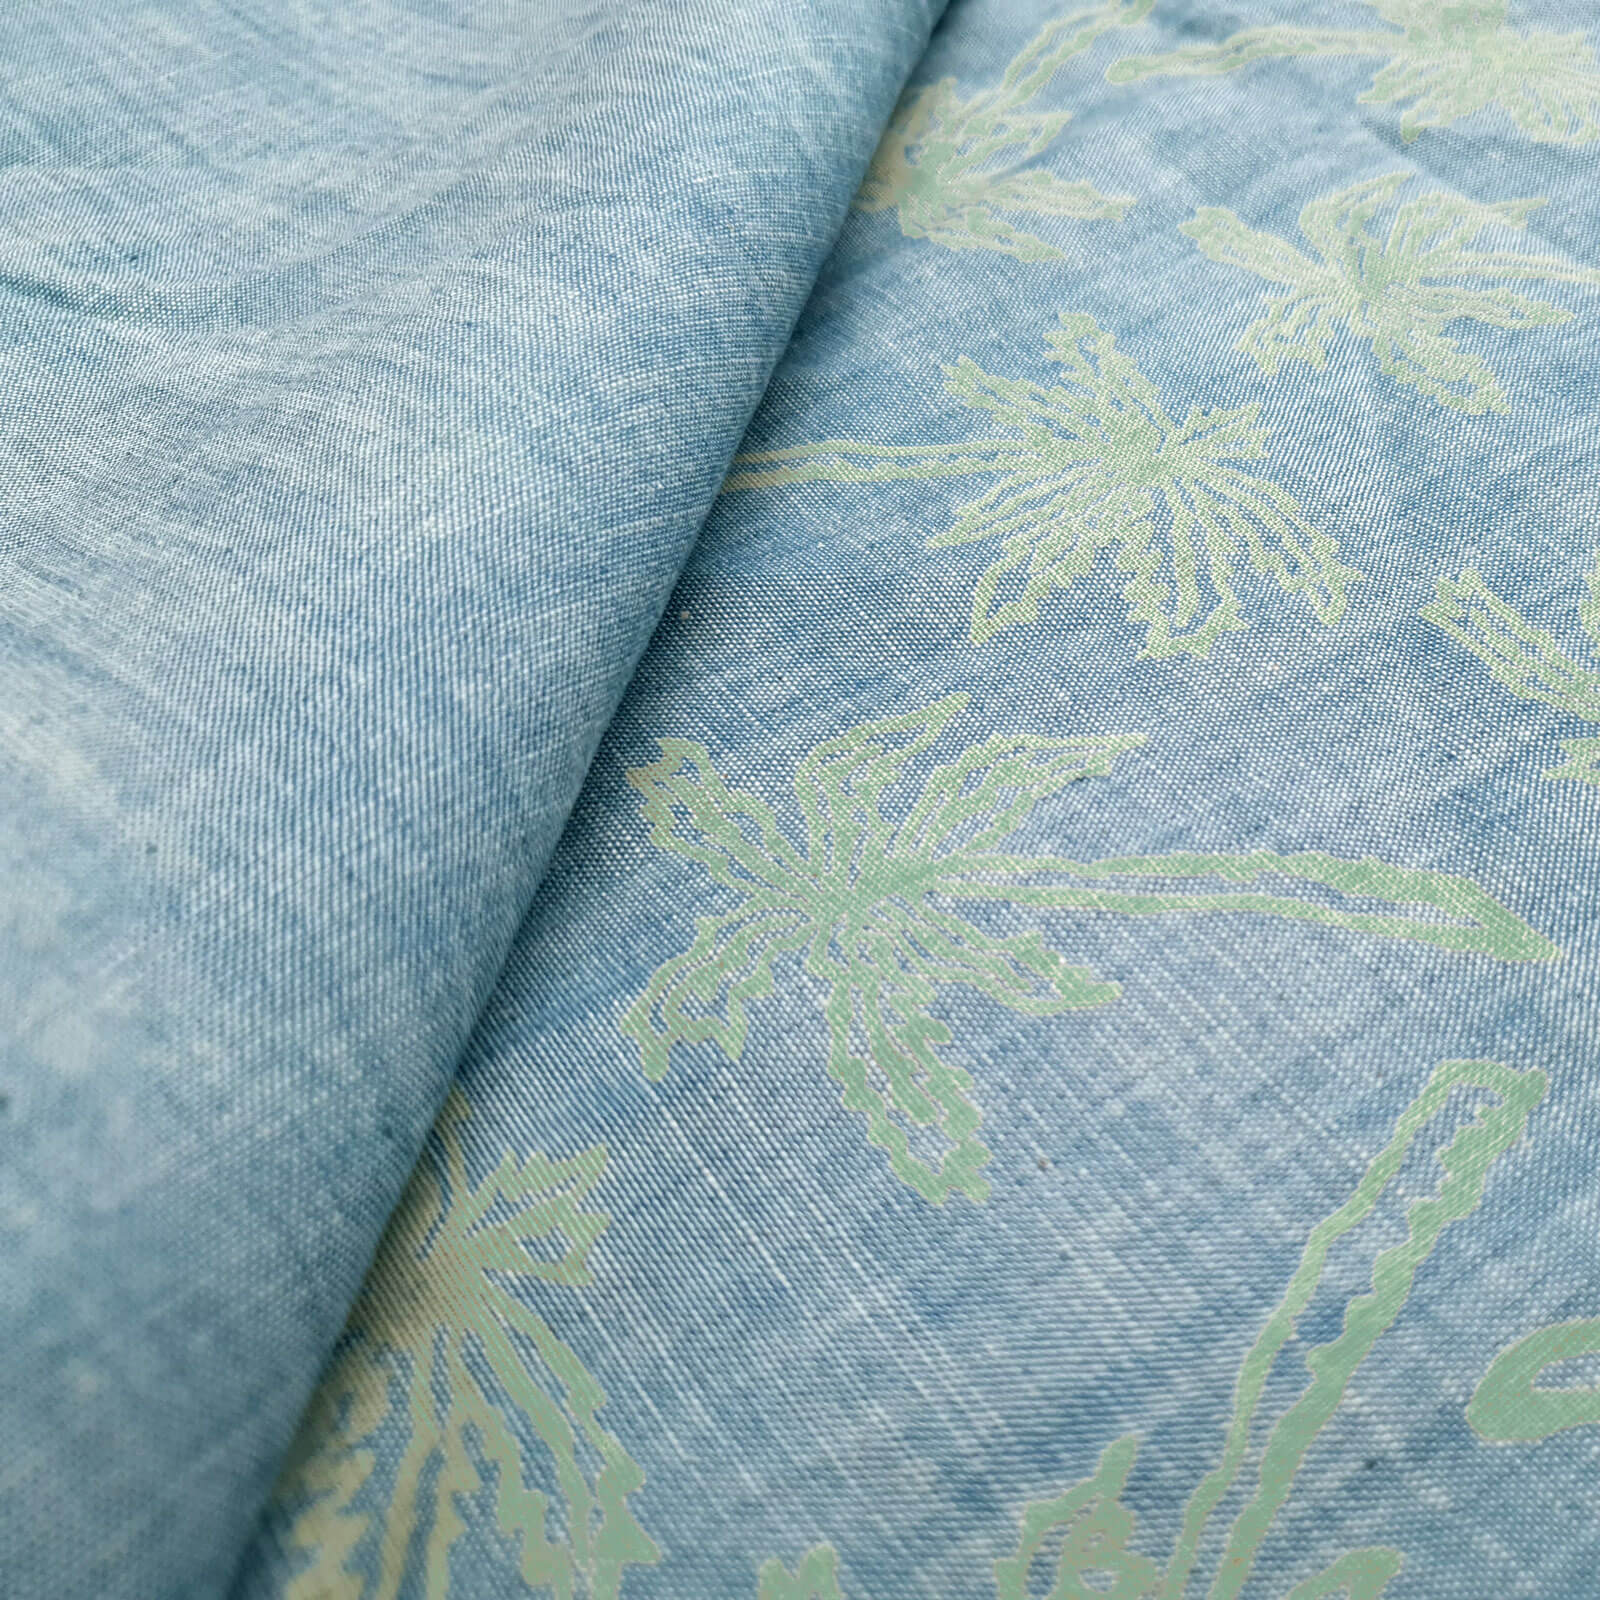 Ruan - Jeans d'été avec imprimé palmier - Bleu chiné